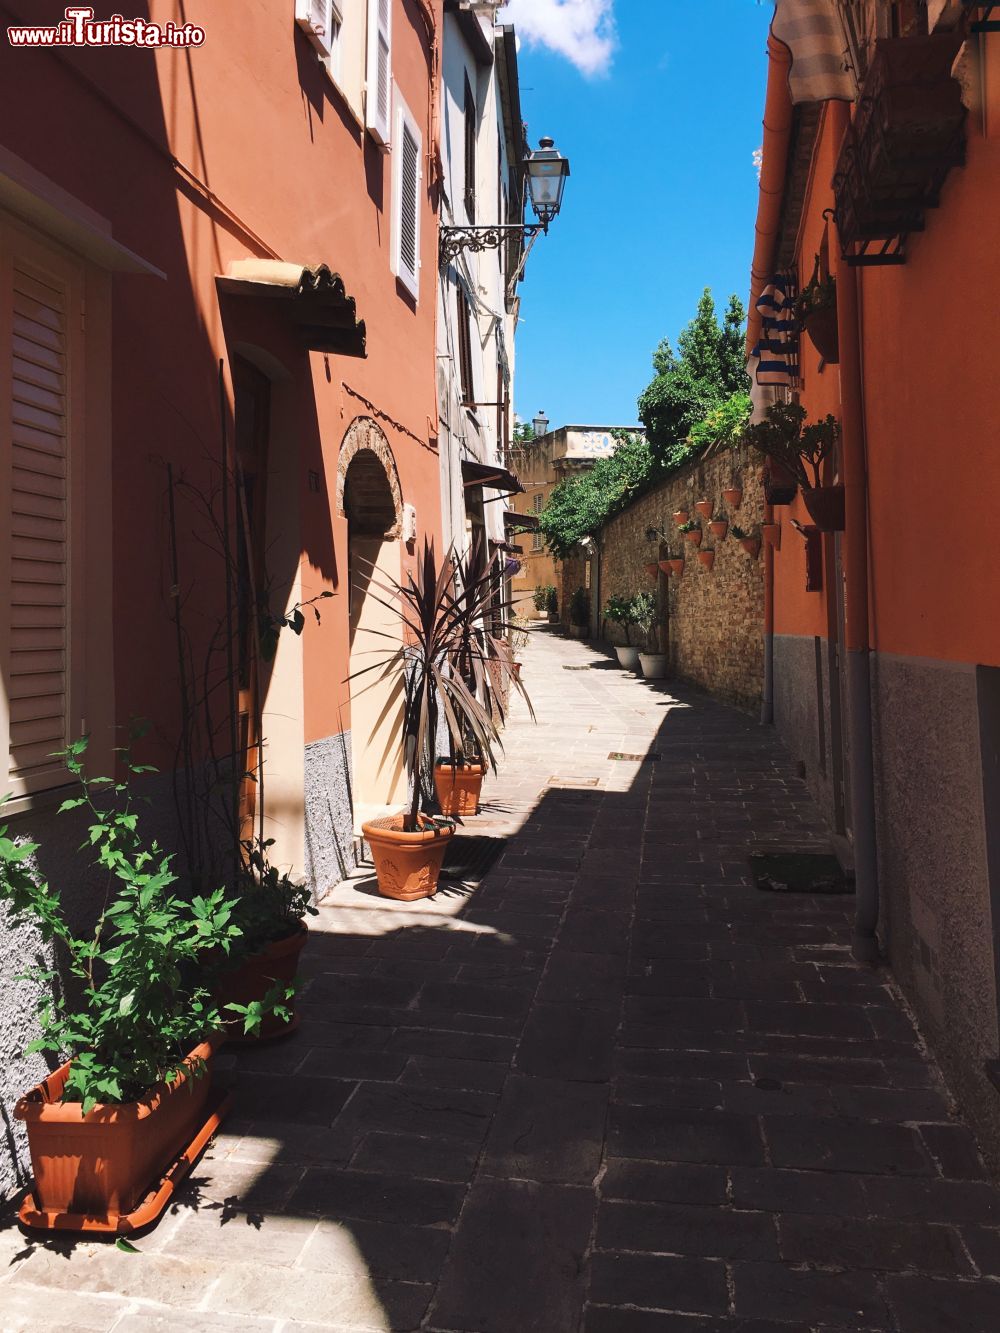 Immagine Un vicoletto del centro storico di San Benedetto del Tronto, Marche.